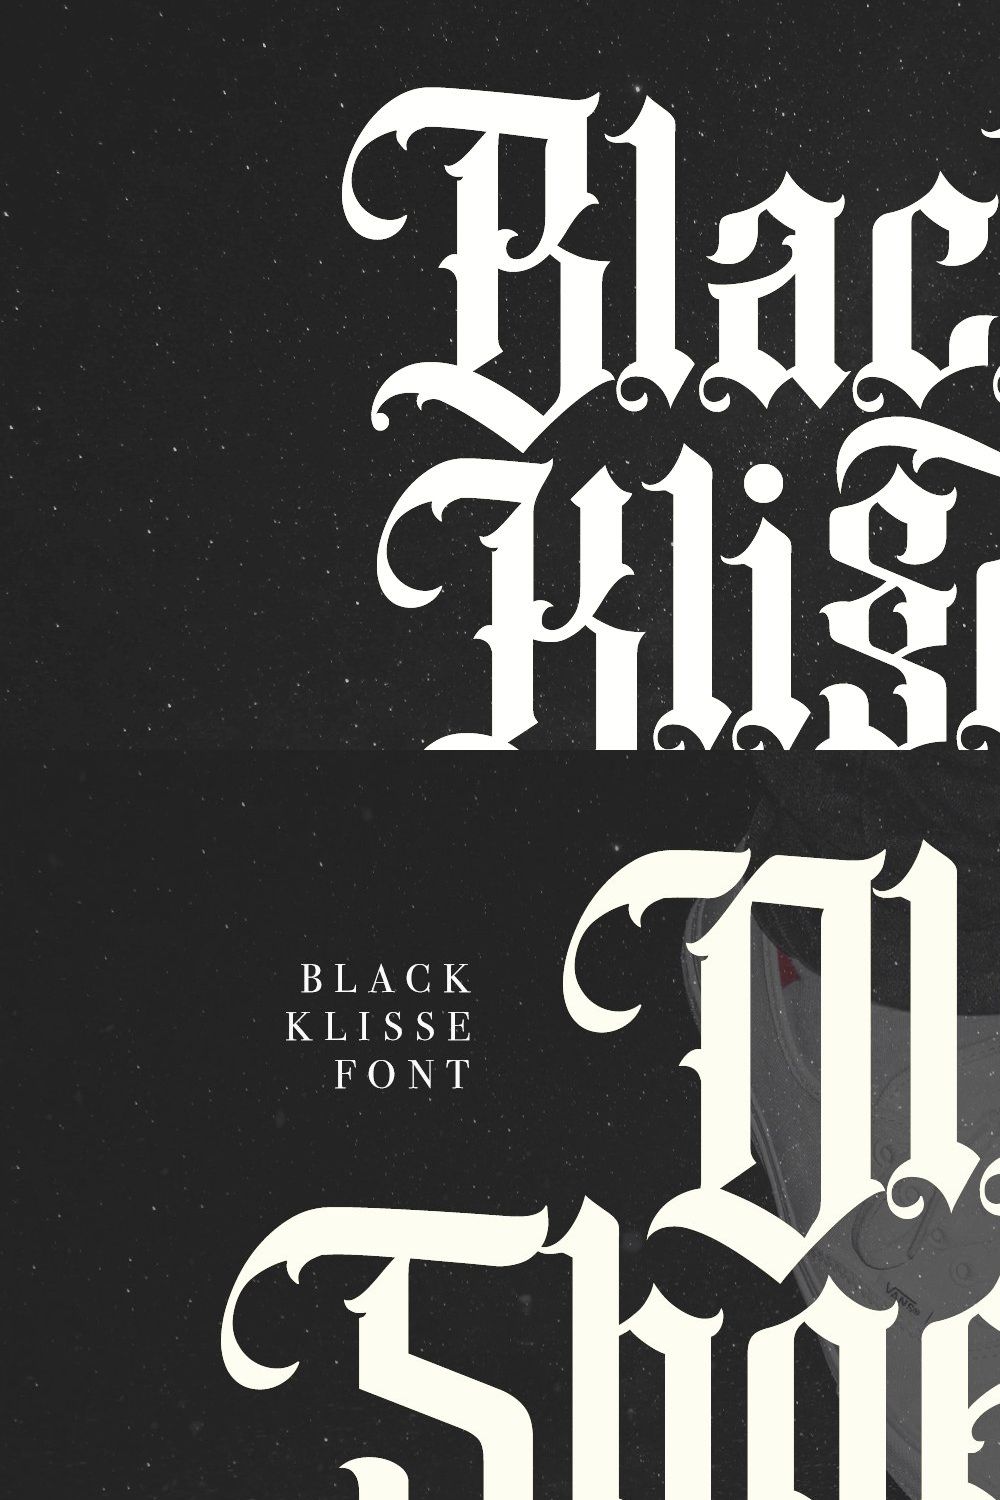 Black Klisse Blackletter Font pinterest preview image.